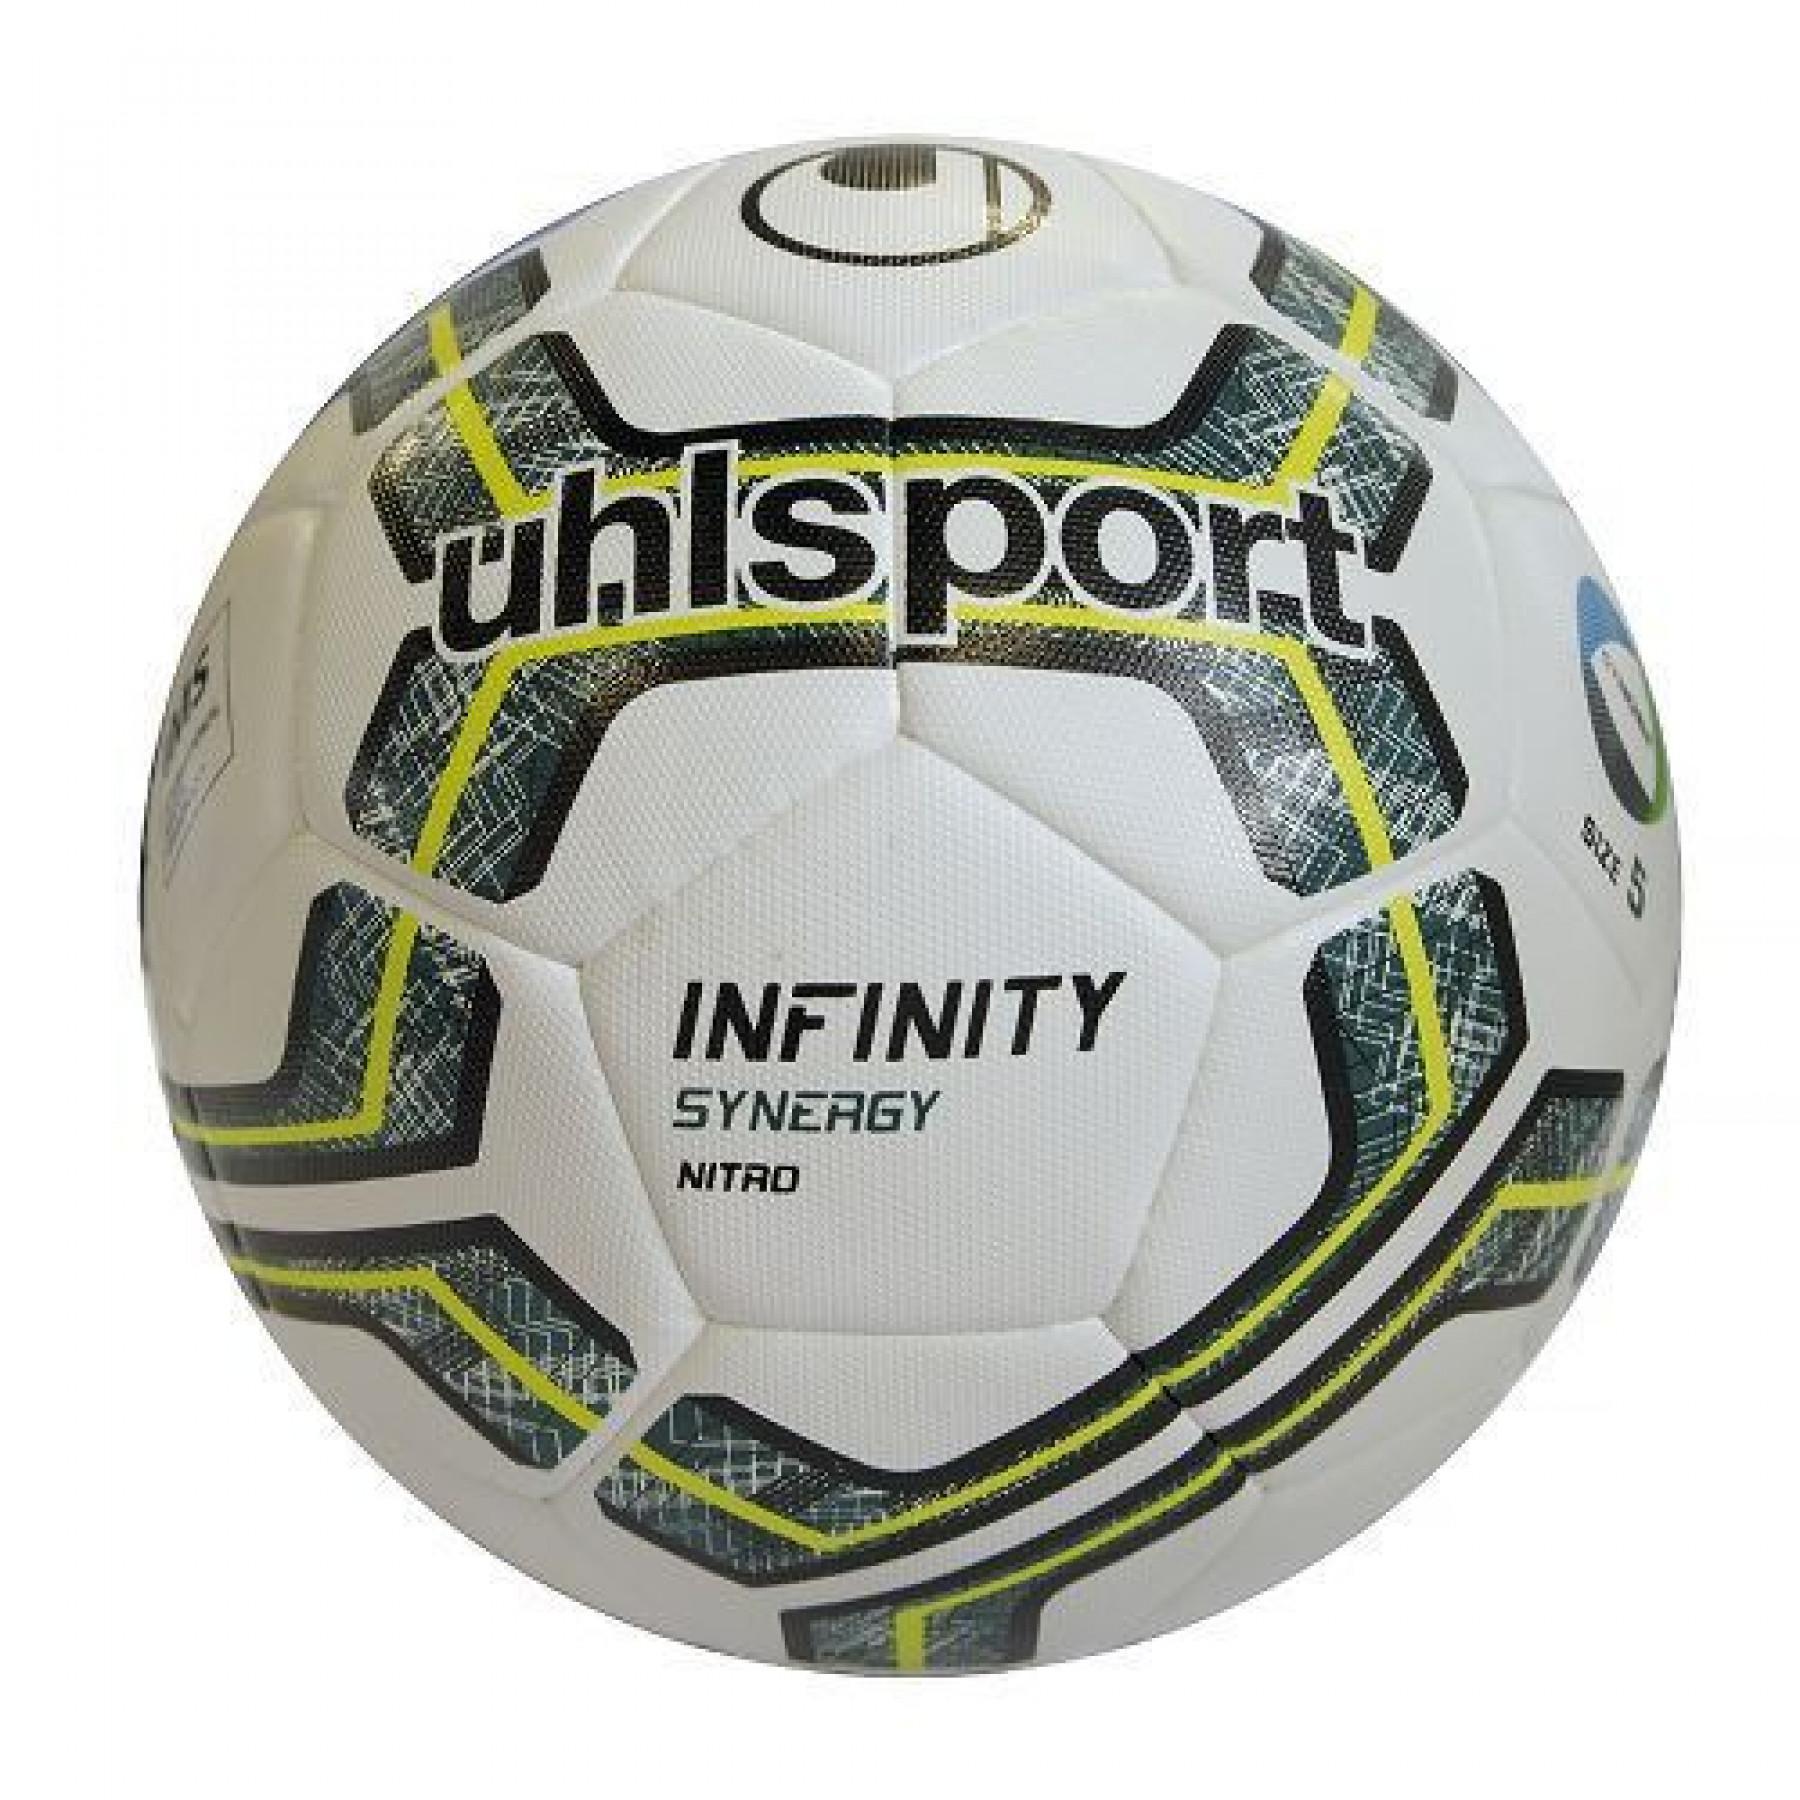 Paquete de 10 globos Uhlsport Infinity synergy Nitro 2.0